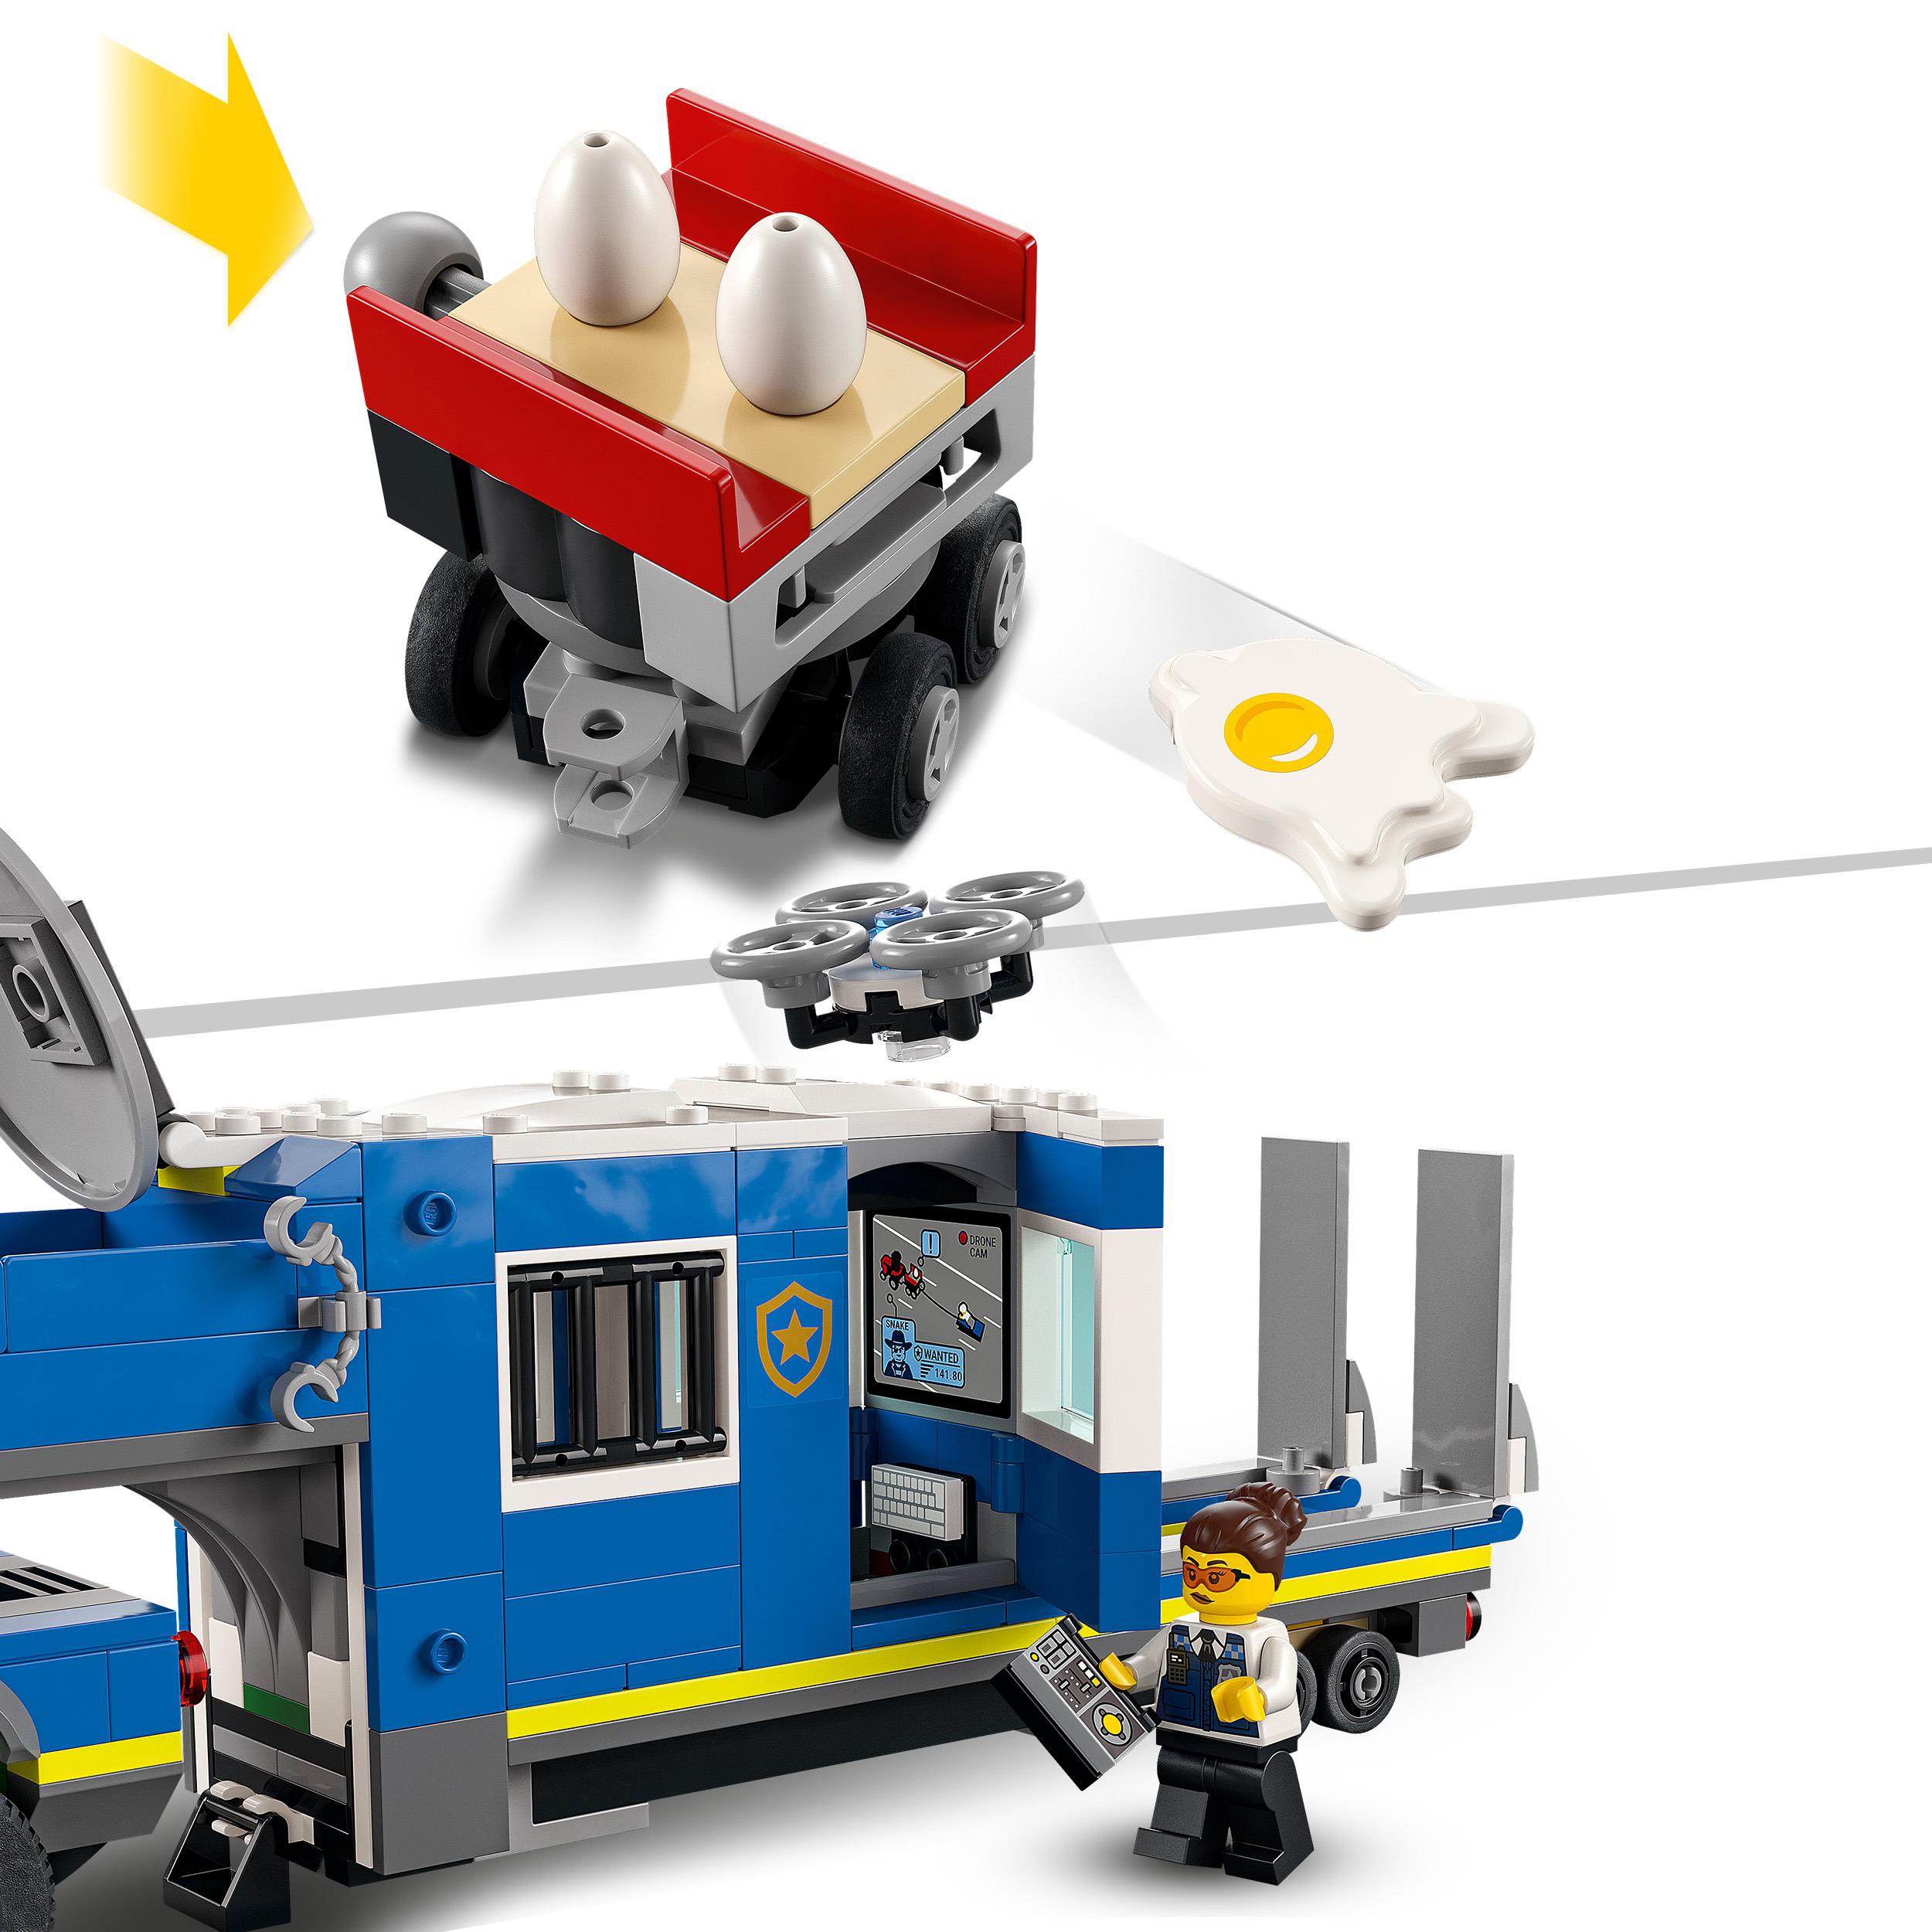 LEGO City Police Camion Centro di Comando della Polizia, ATV, Drone, 4 Minifigur 60315, , large